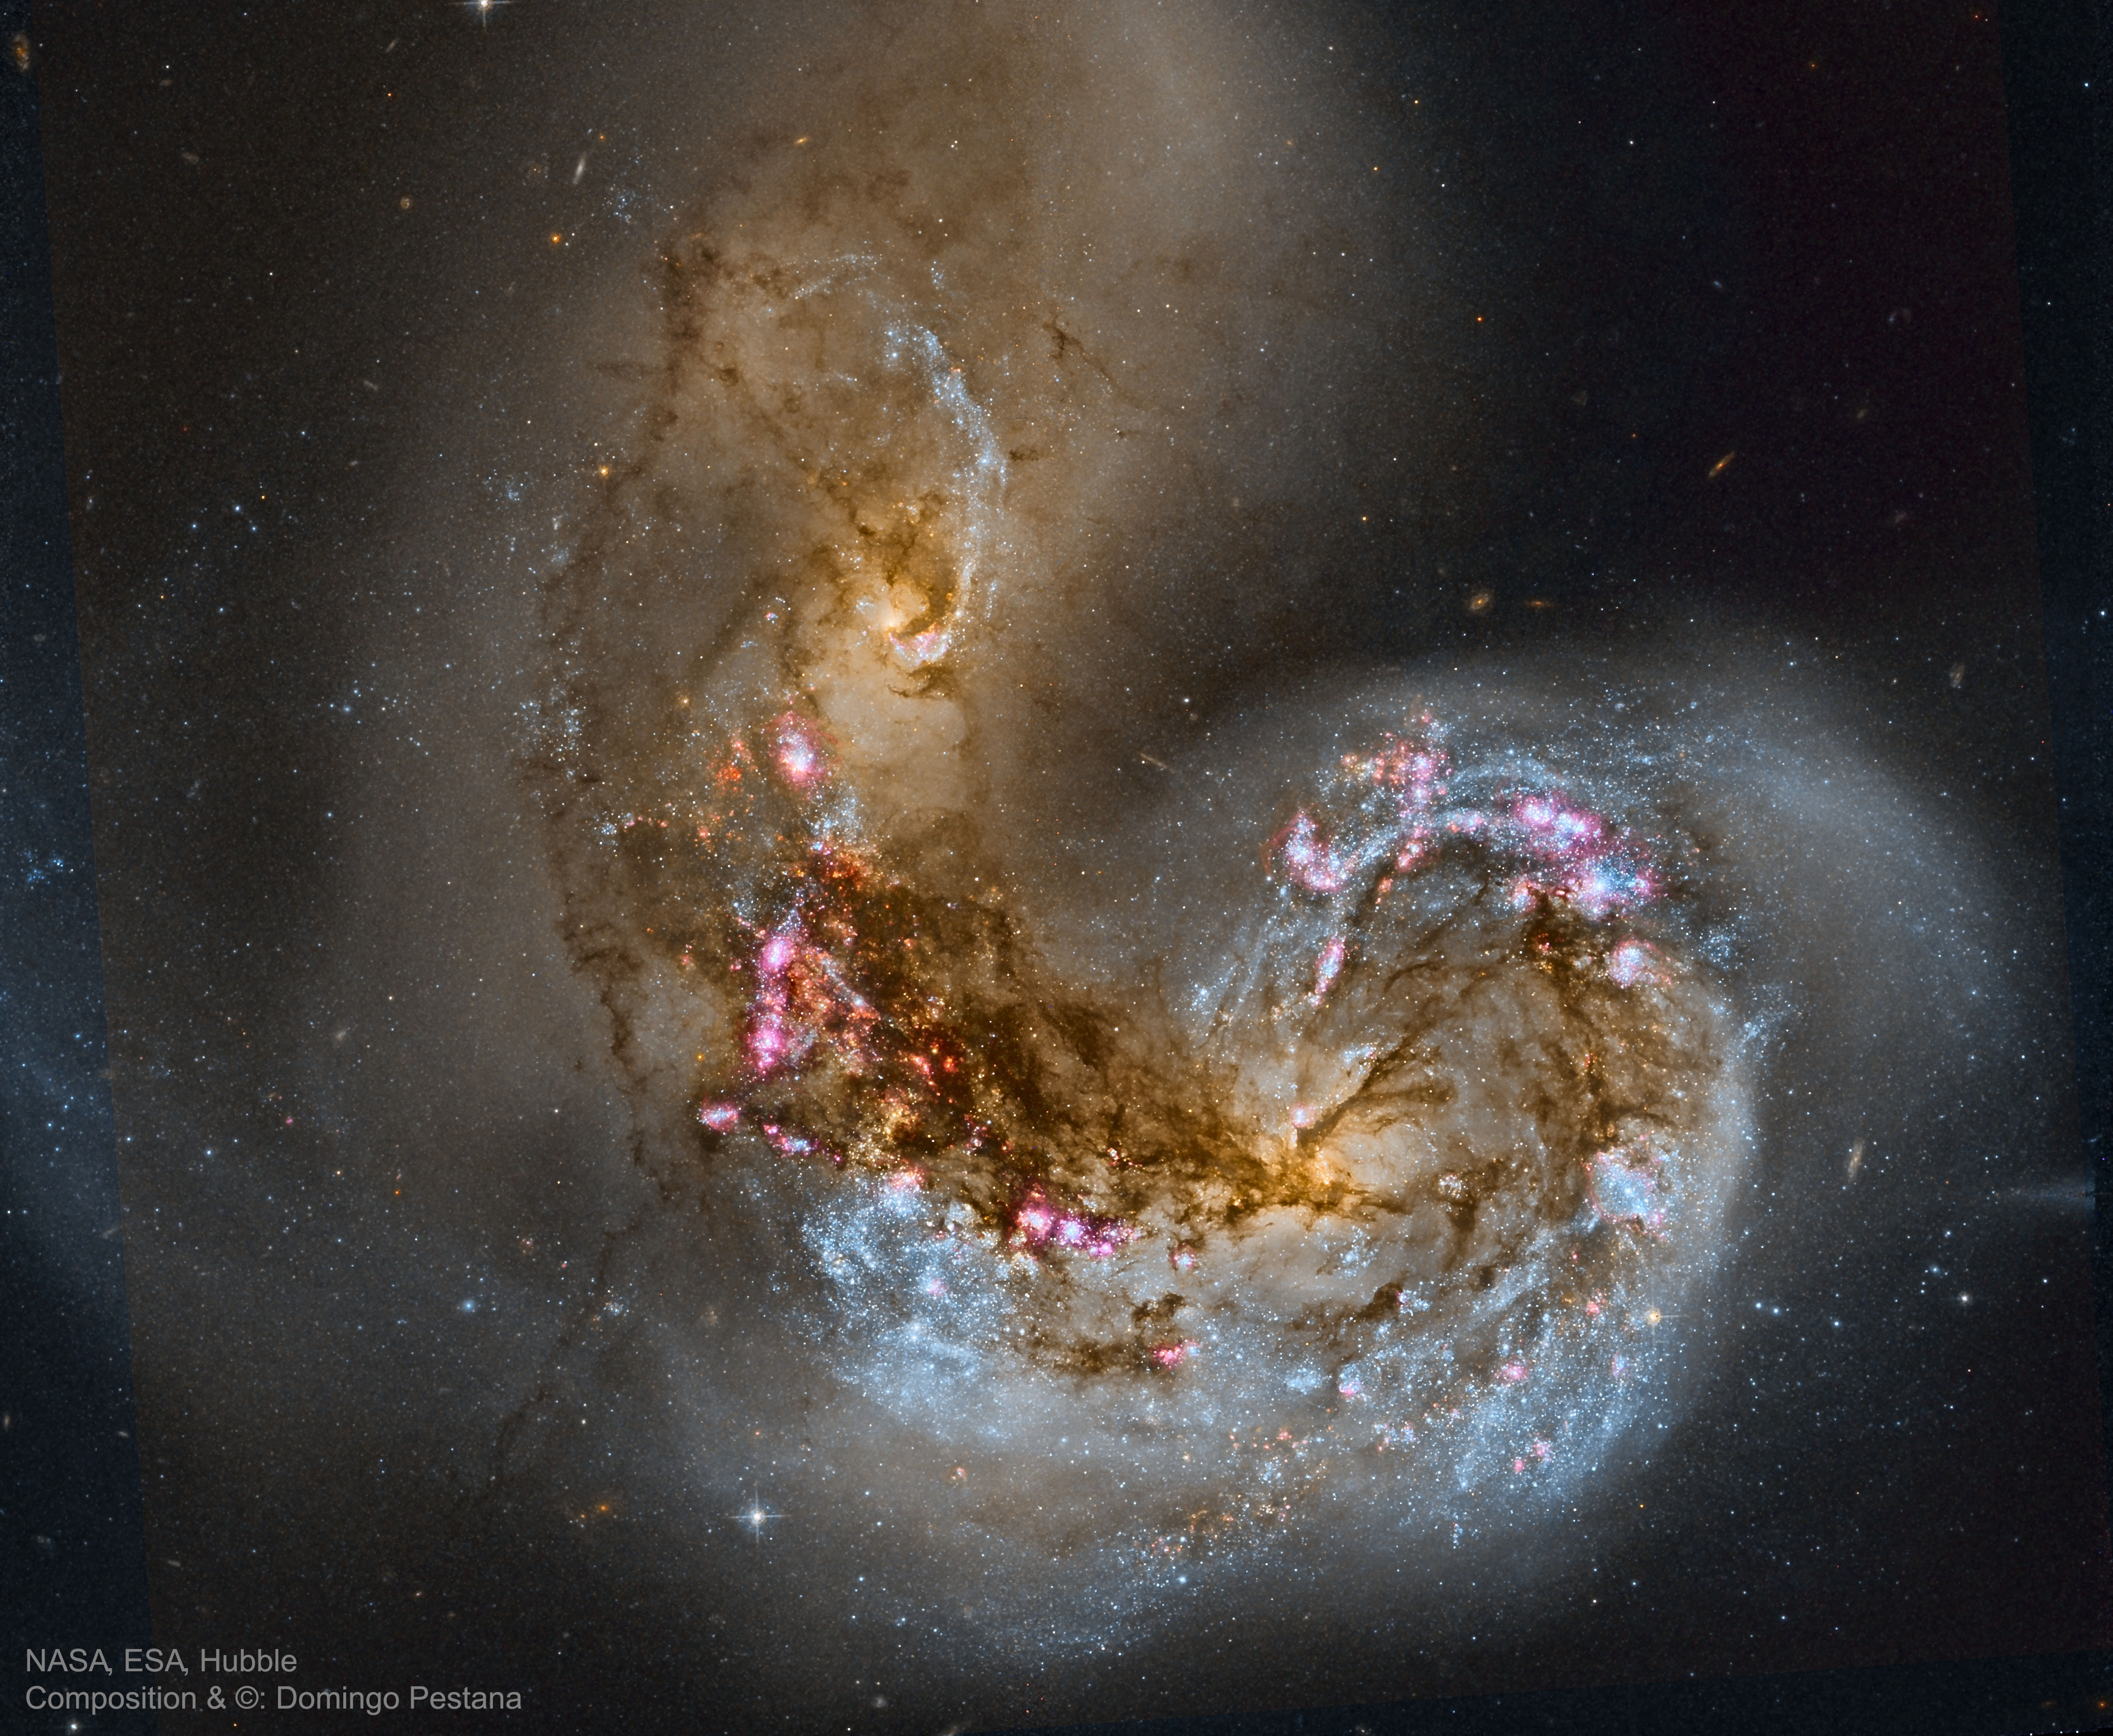 Spiral'naya galaktika NGC 4038 vo vremya stolknoveniya